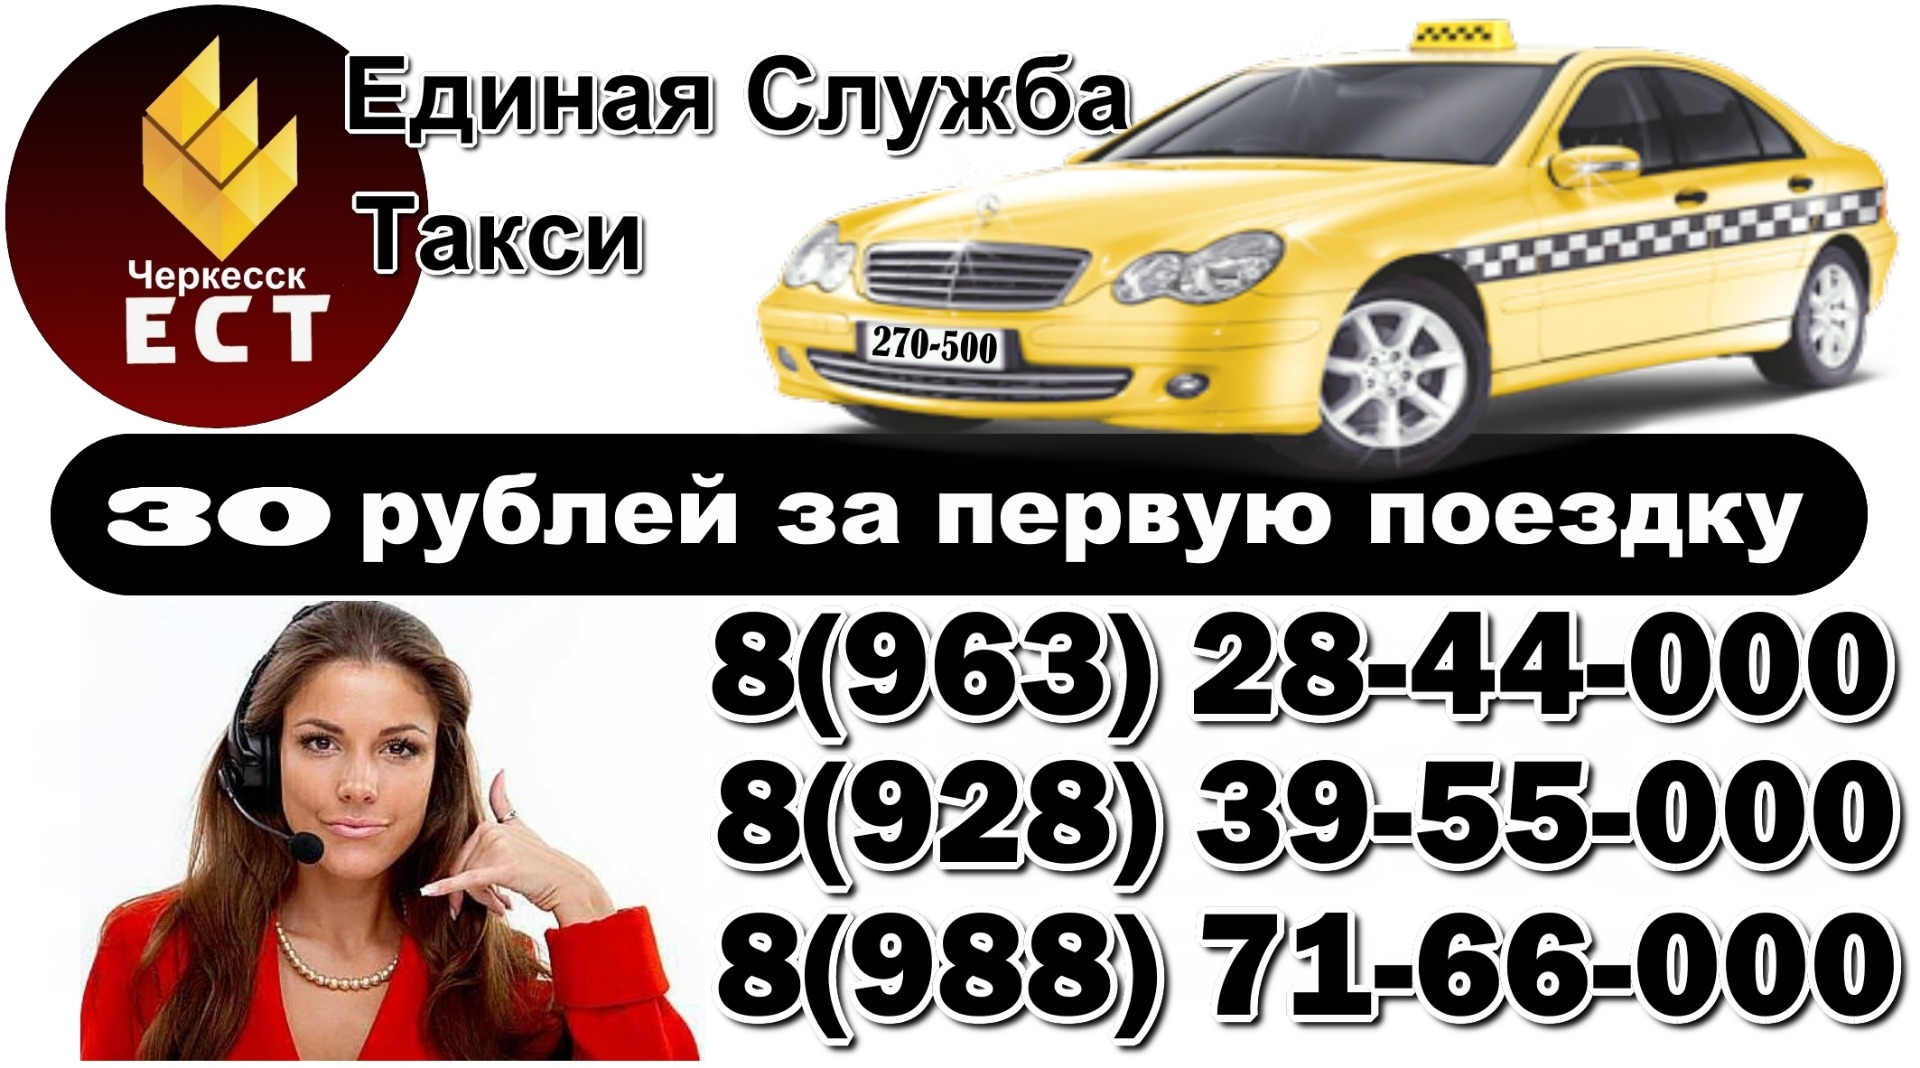 Номер такси ставропольского края. Номер телефона такси. Номера службы такси. Такси Единая служба номер. Такси Черкесск.